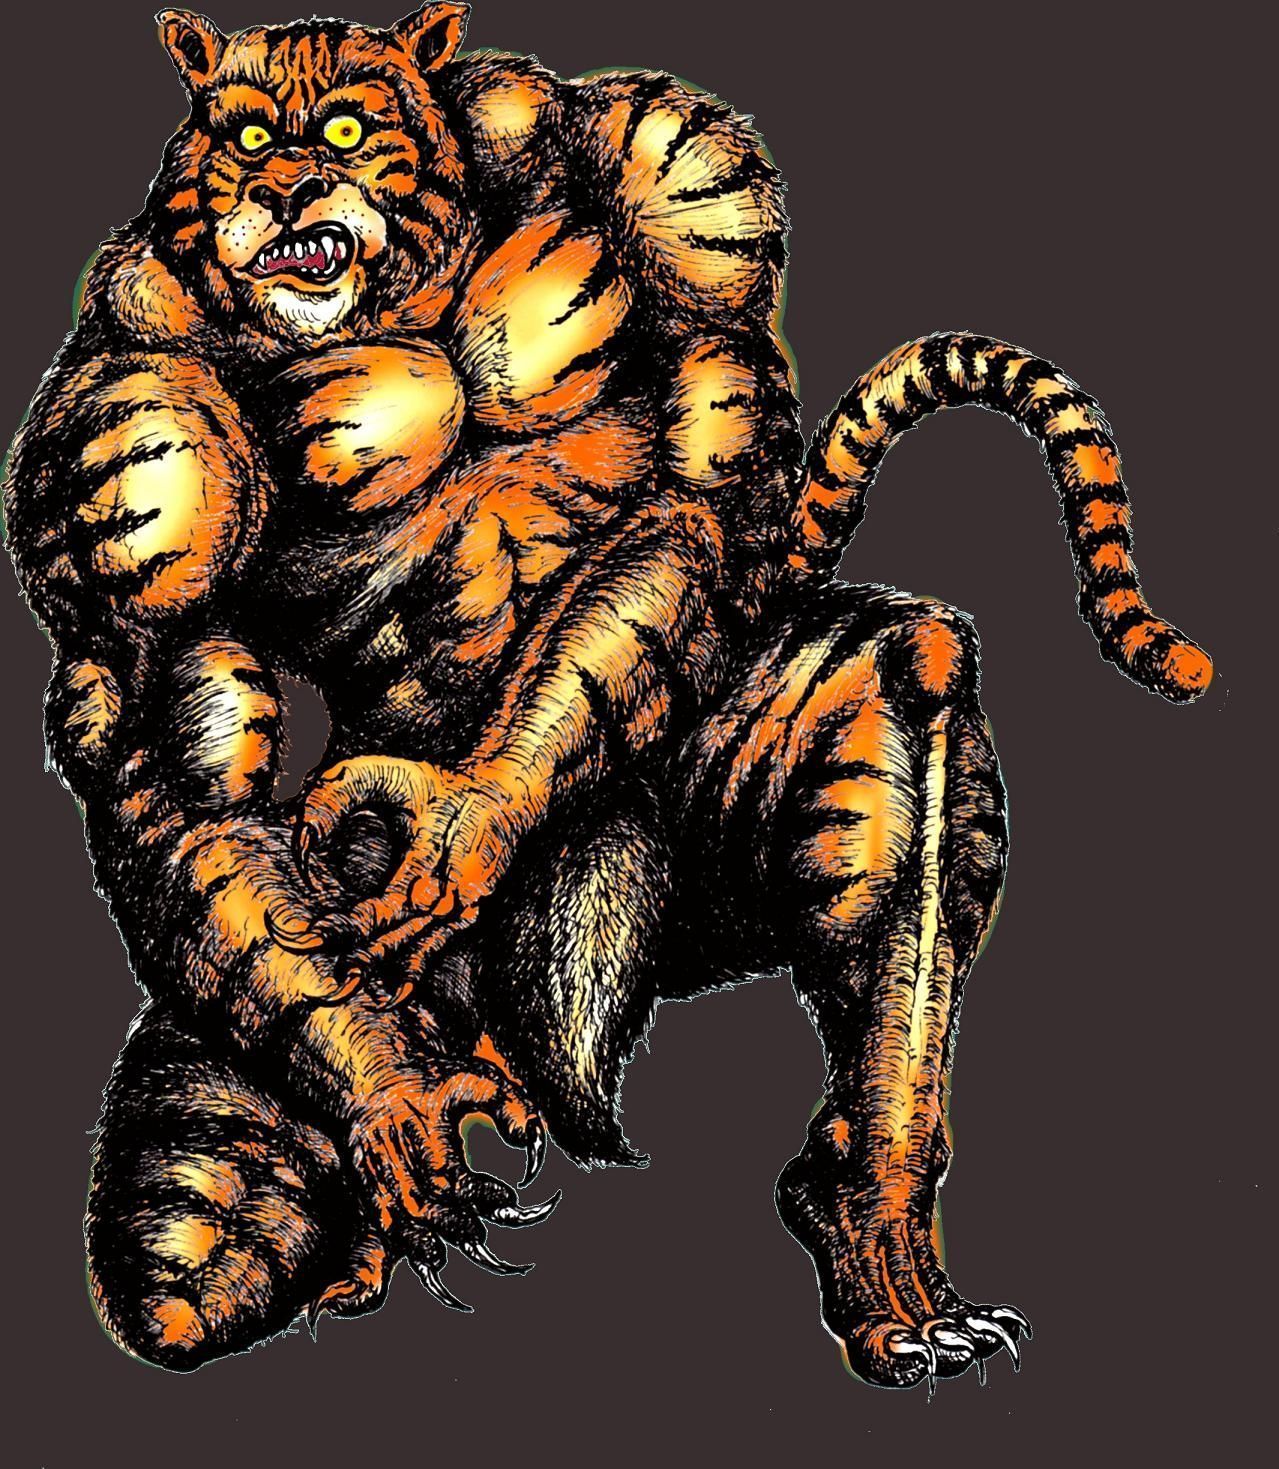 Tigerman [1983]